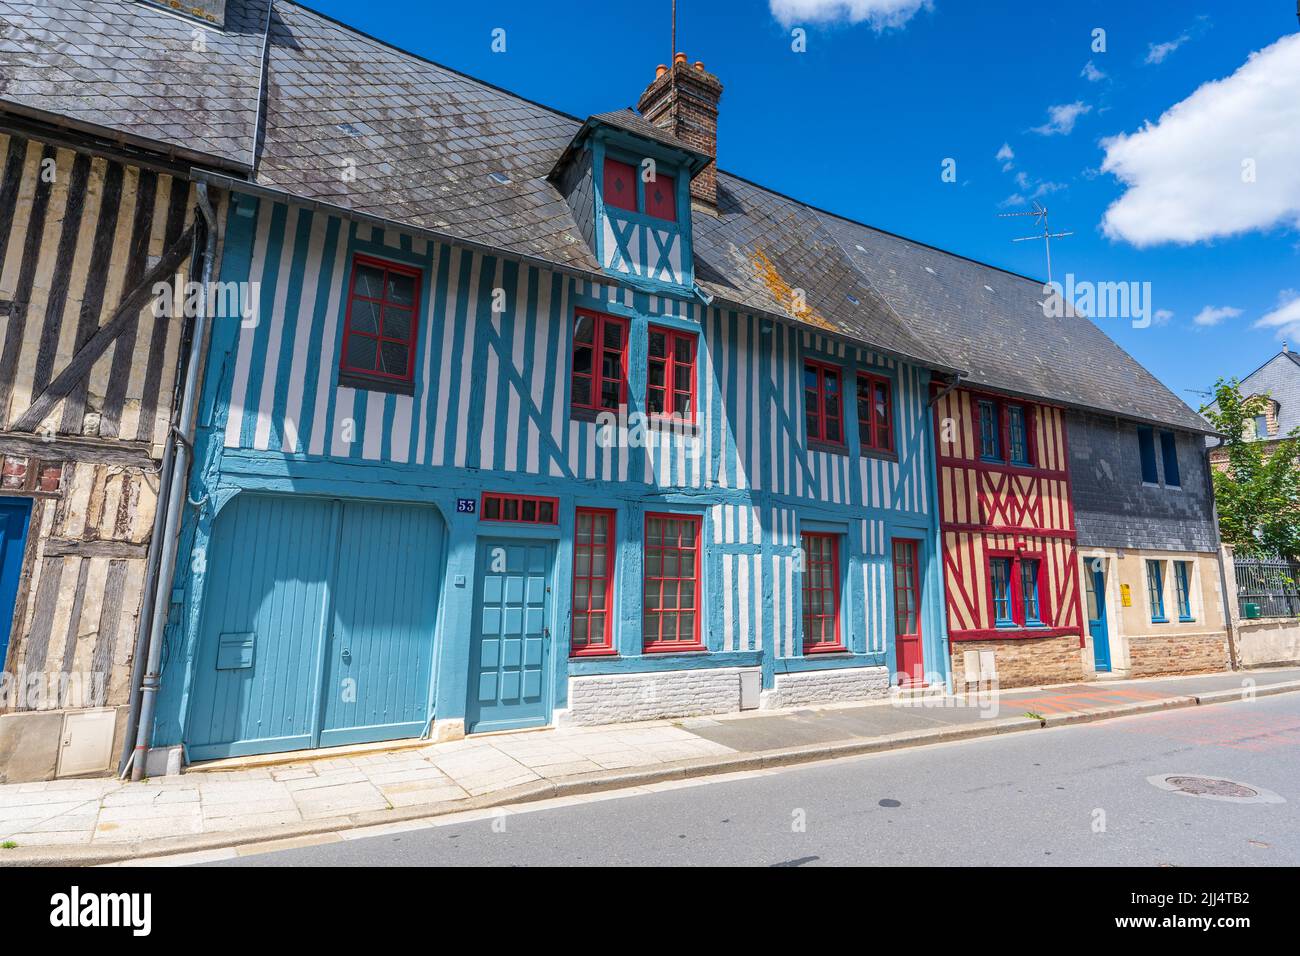 Villaggio bretone con le tipiche abitazioni a traliccio (Francia) Foto de stock